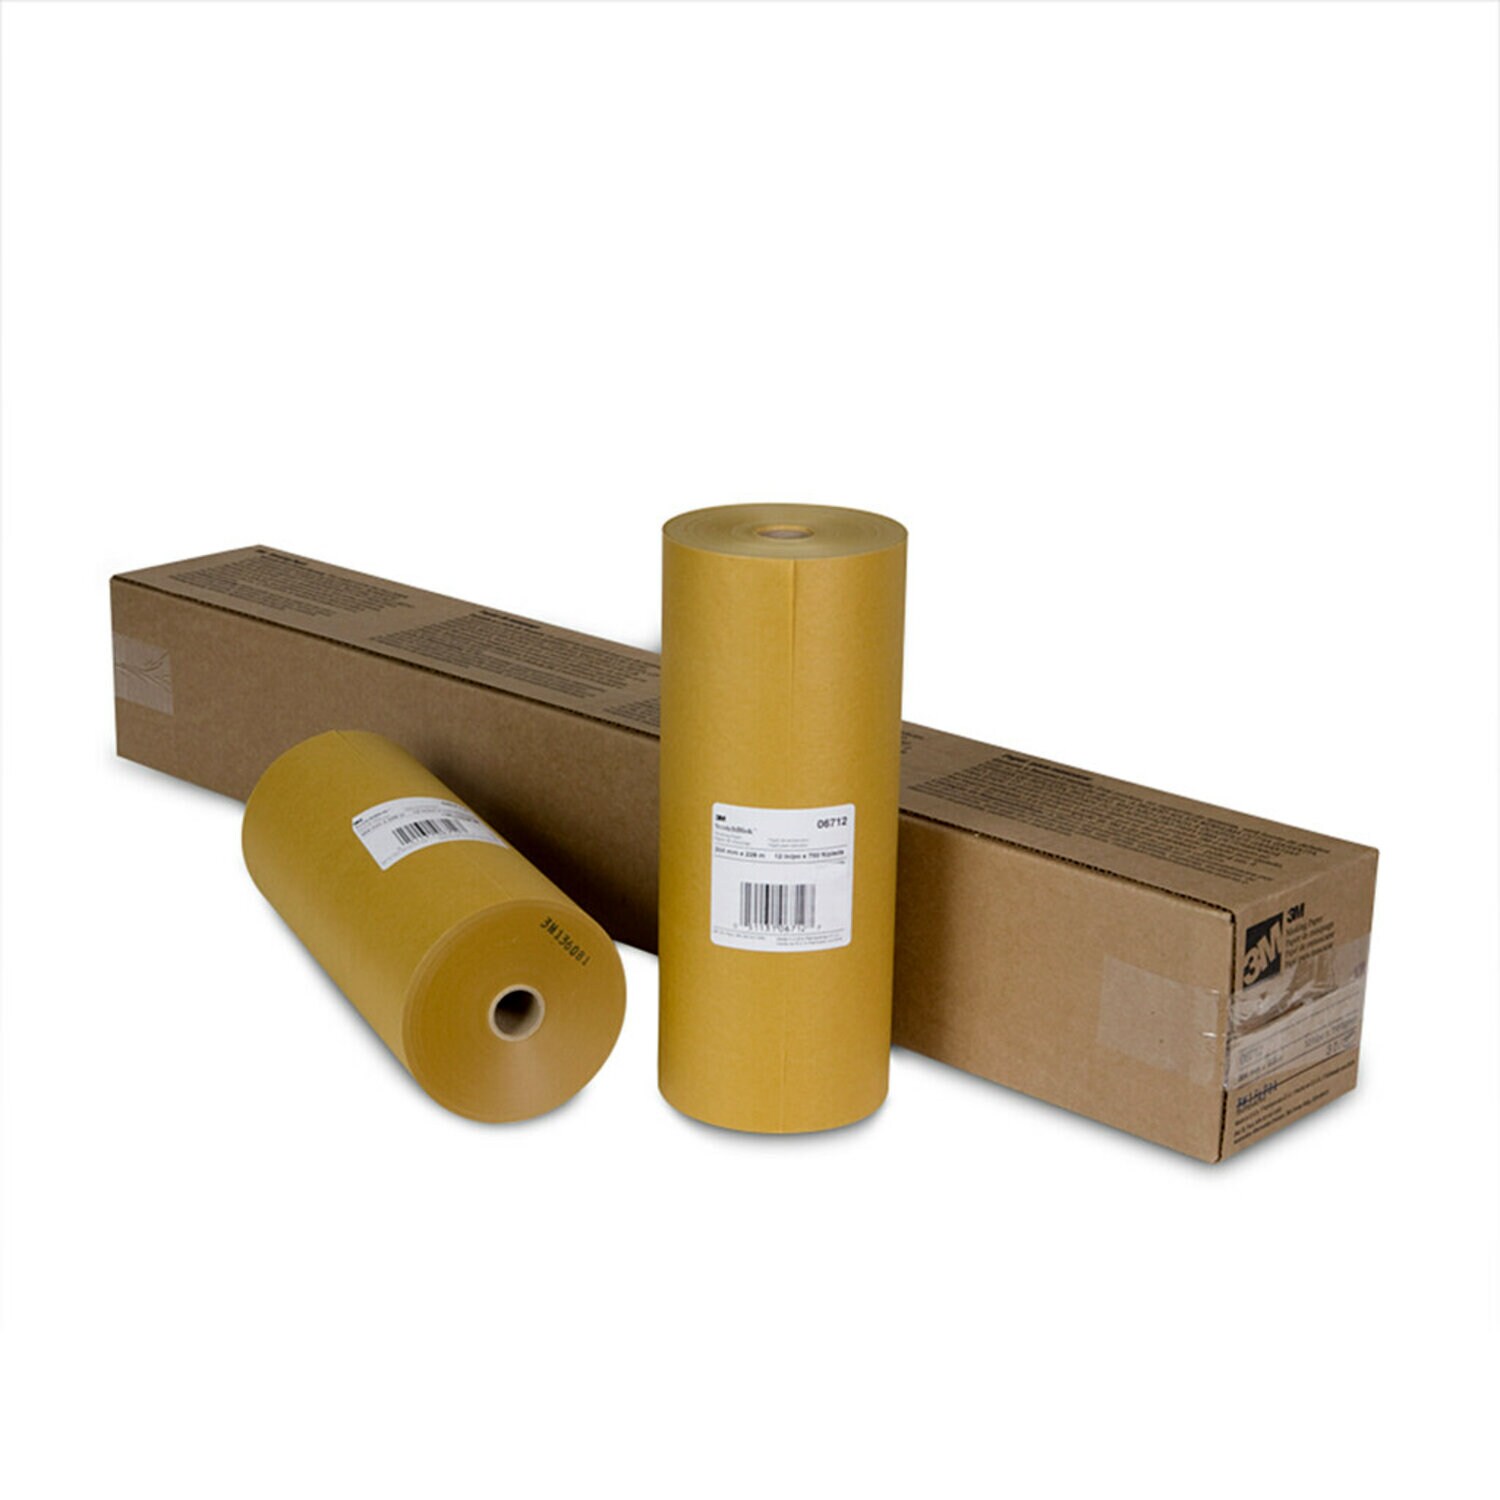 7000125989 - 3M Scotchblok Masking Paper, 06712, 12 in x 750 ft, 3 per case